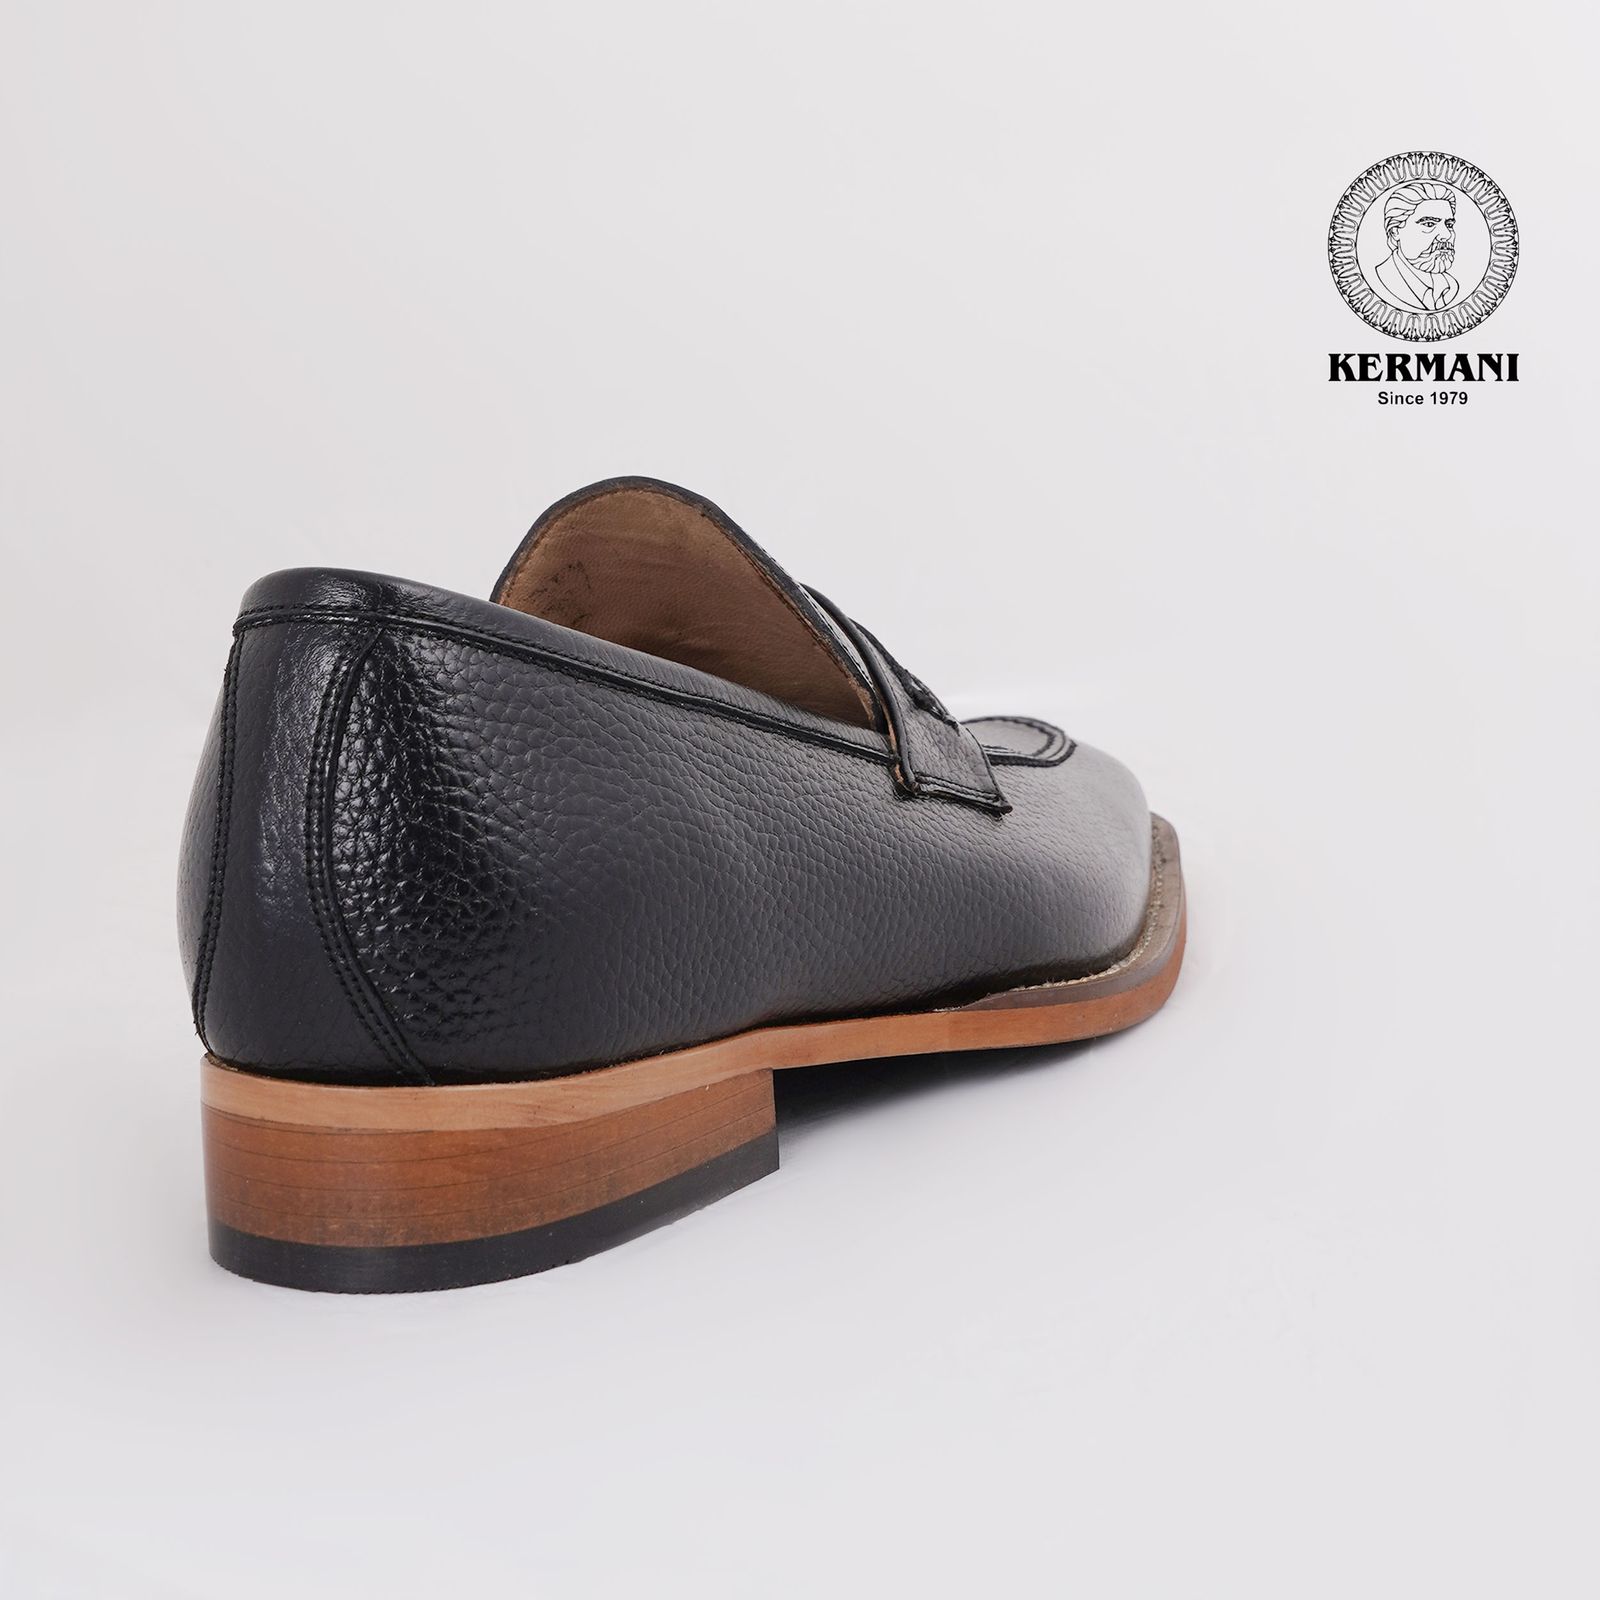 کفش مردانه کرمانی مدل چرم دستدوز طبیعی فلوتر کد 1064 رنگ مشکی -  - 6